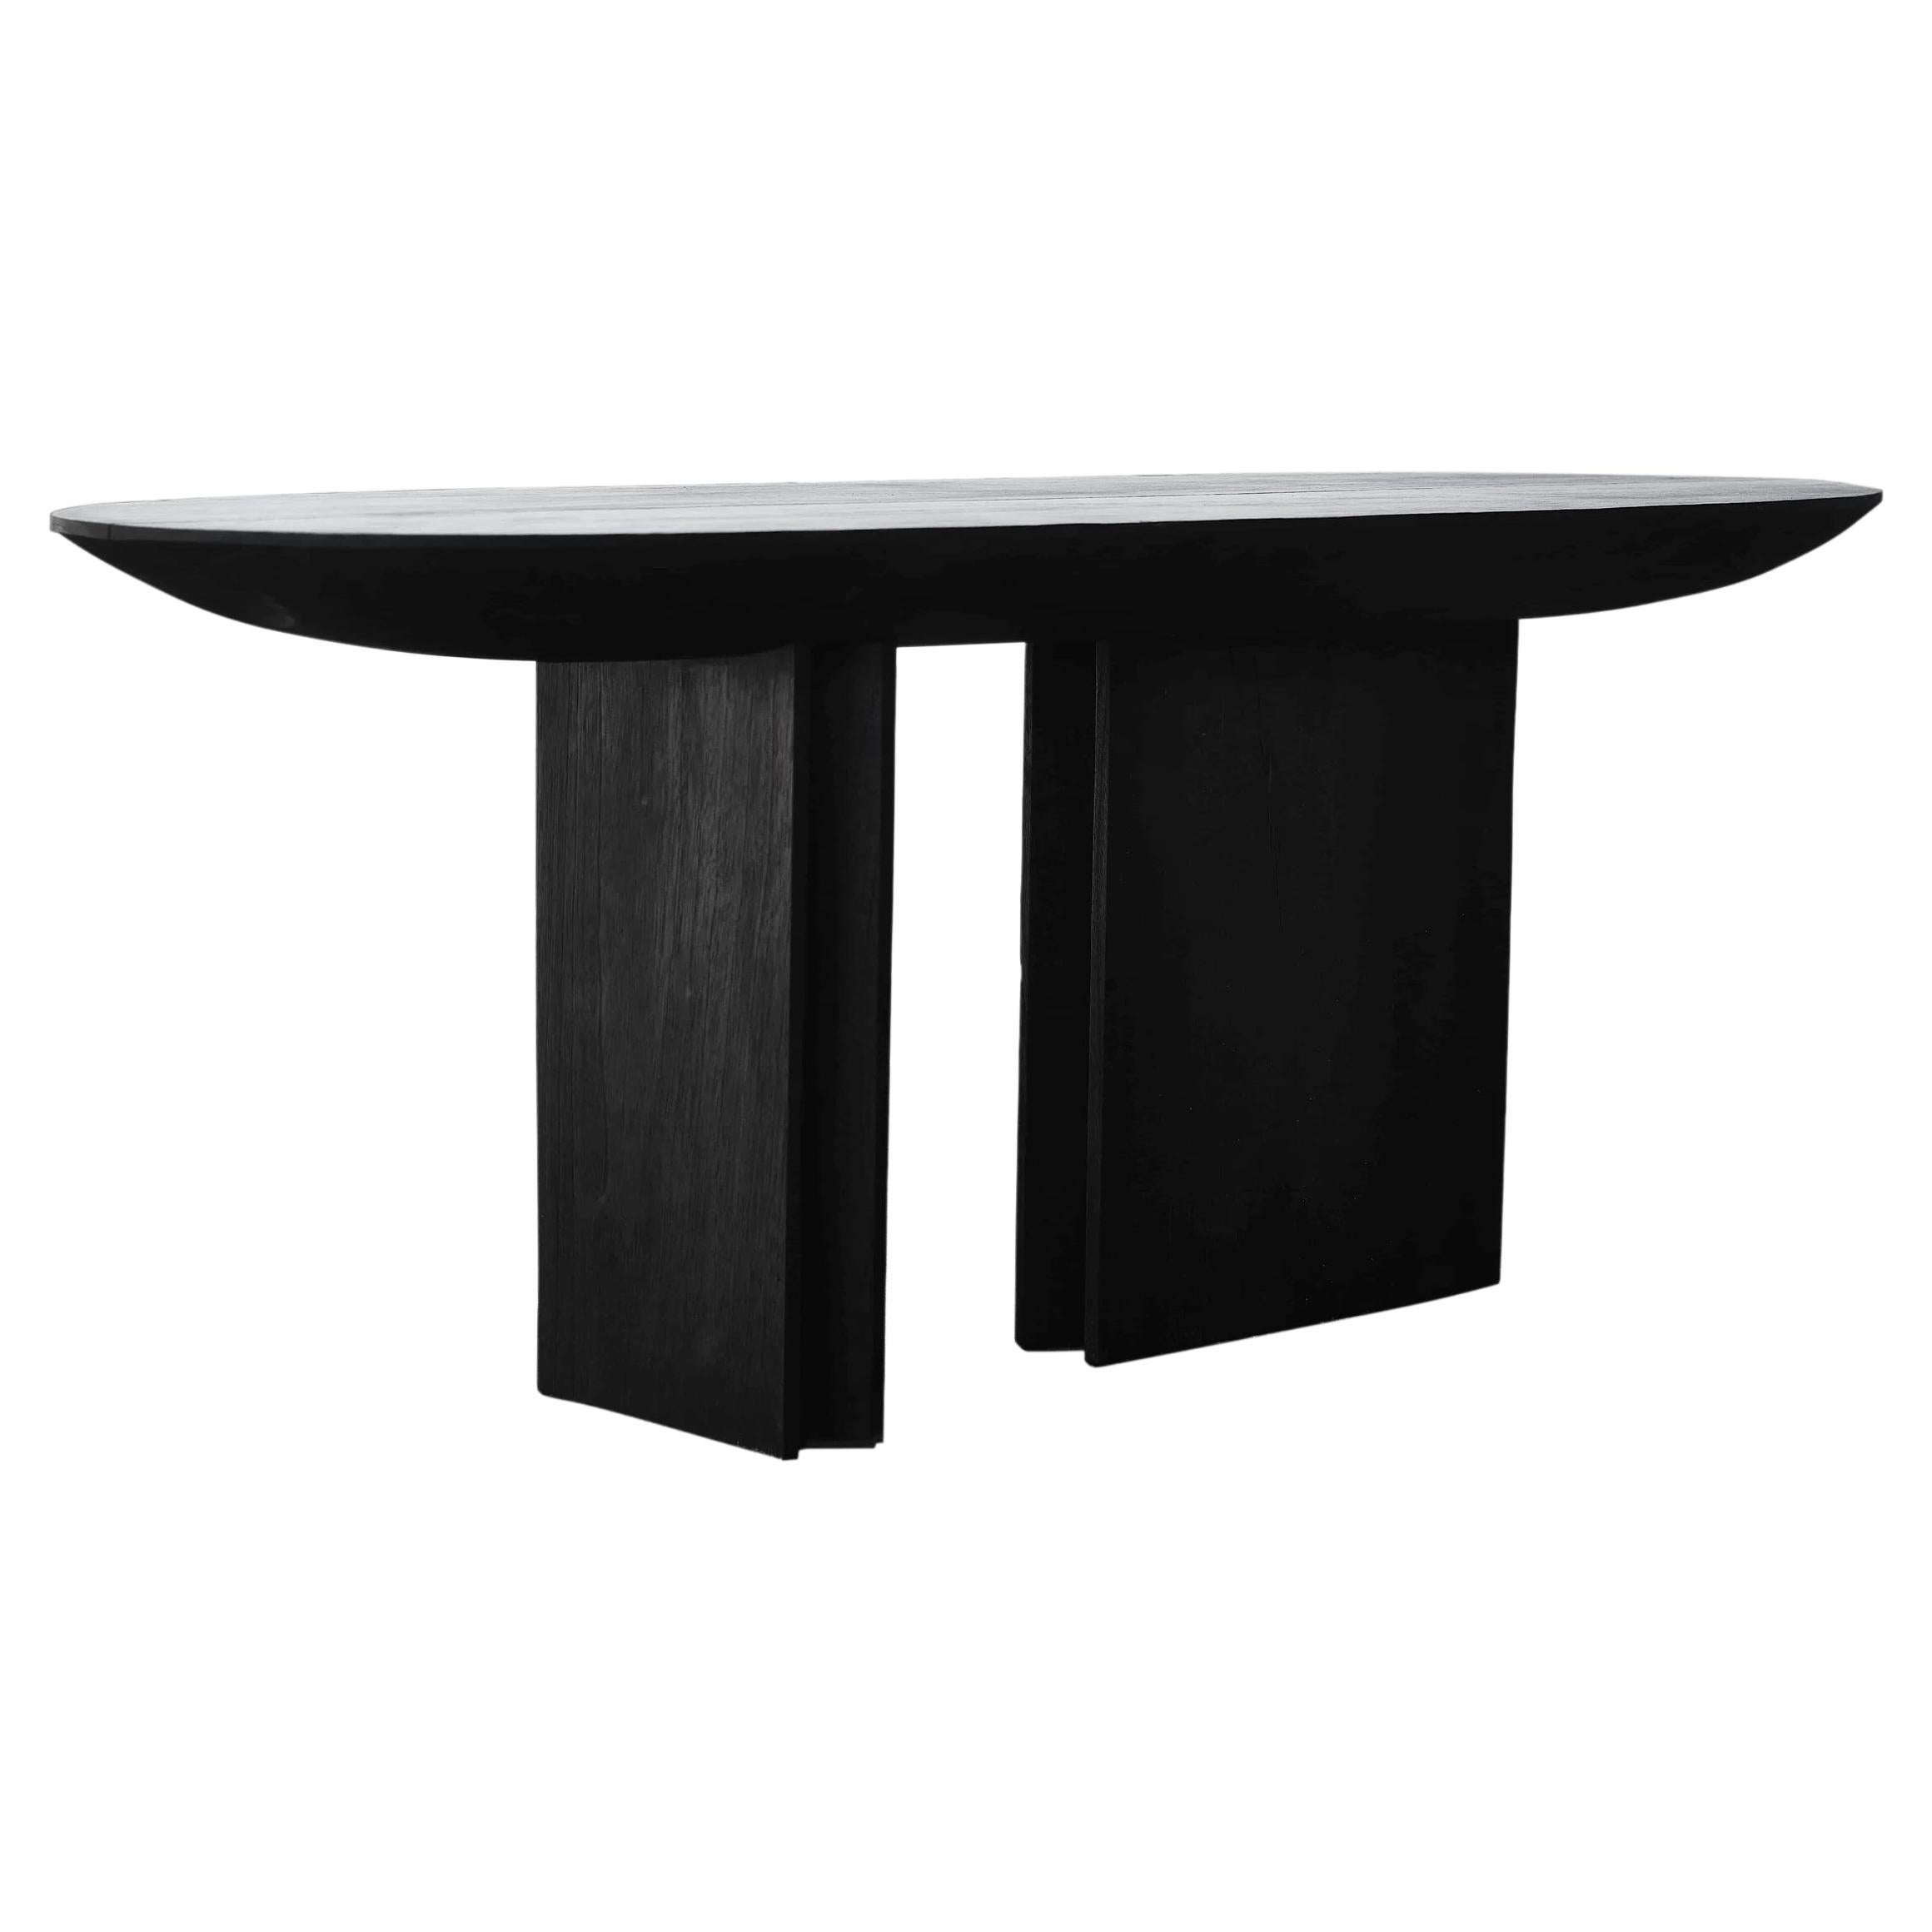 Table console contemporaine Barca en bois brûlé de CarmWorks, personnalisable